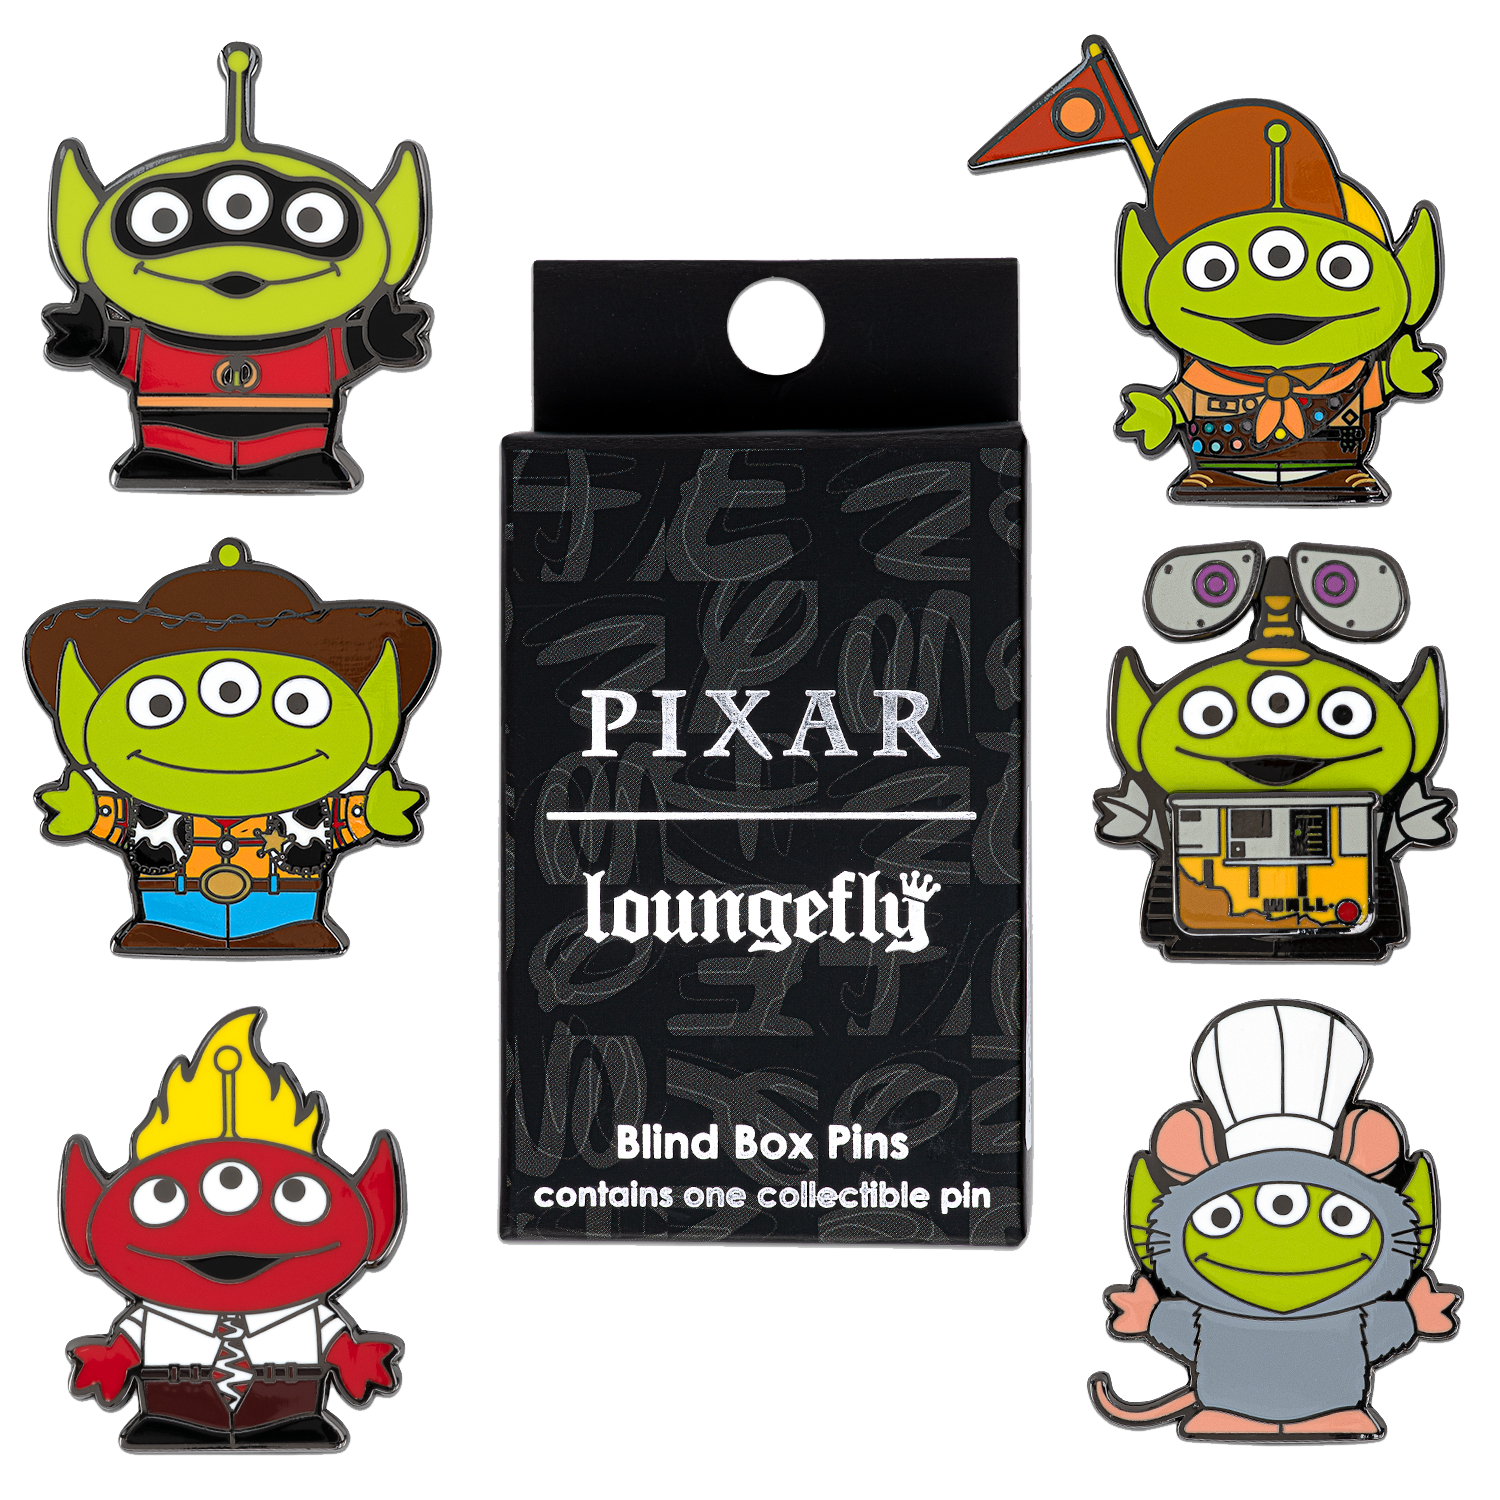 Pixar Loungefly Enamel Pins Finding Nemo Fish Tank Buddies Display